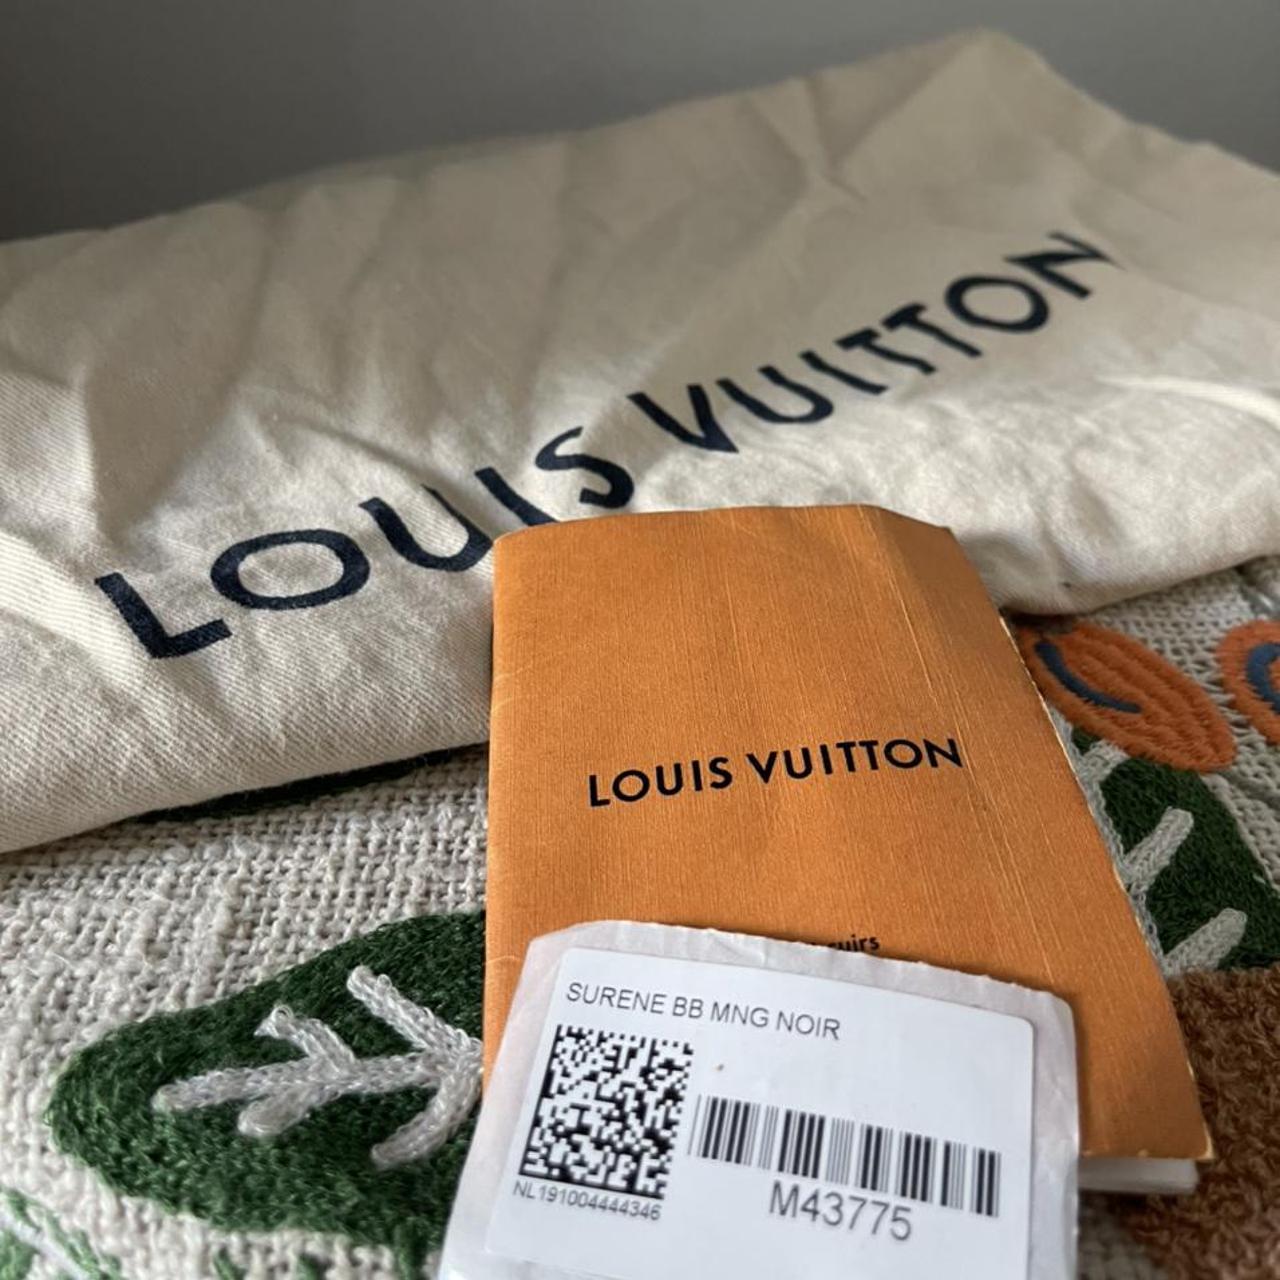 LOUIS VUITTON Monogram Surene BB Chain Shoulder Bag Noir M43775